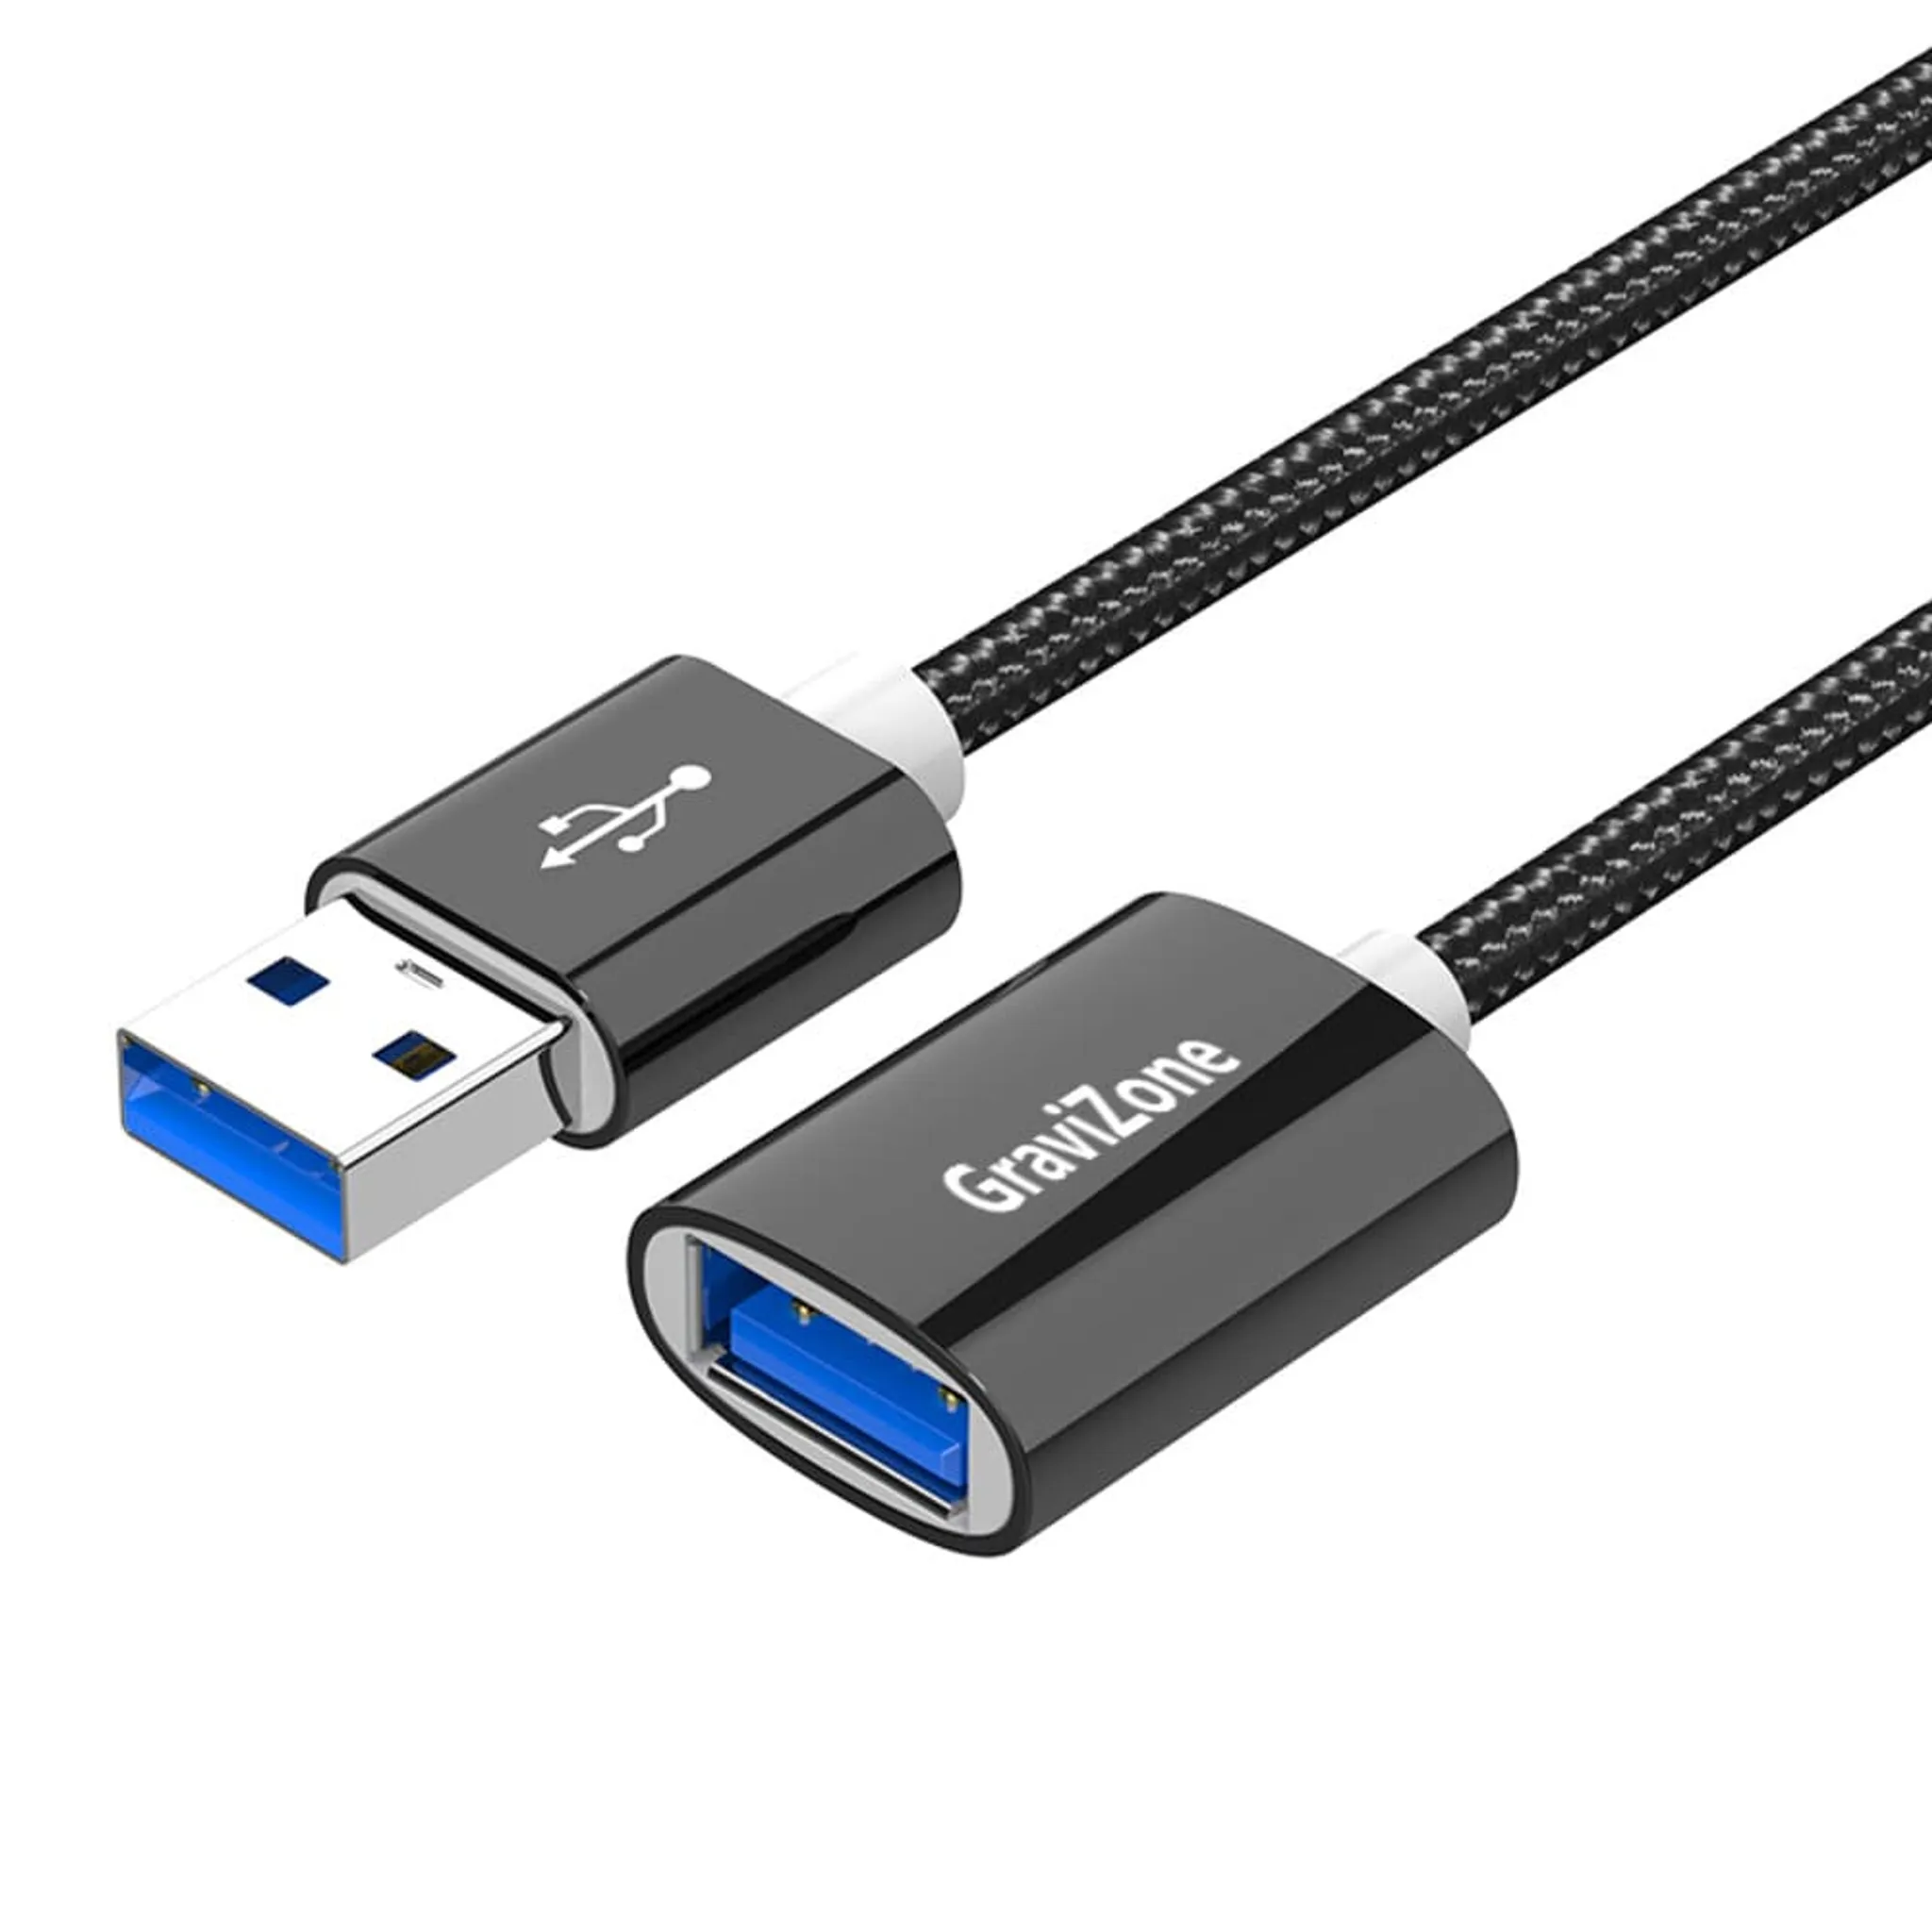 Verlängerungskabel USB 3.0 Stecker A an Buchse A, schwarz, 1,8m